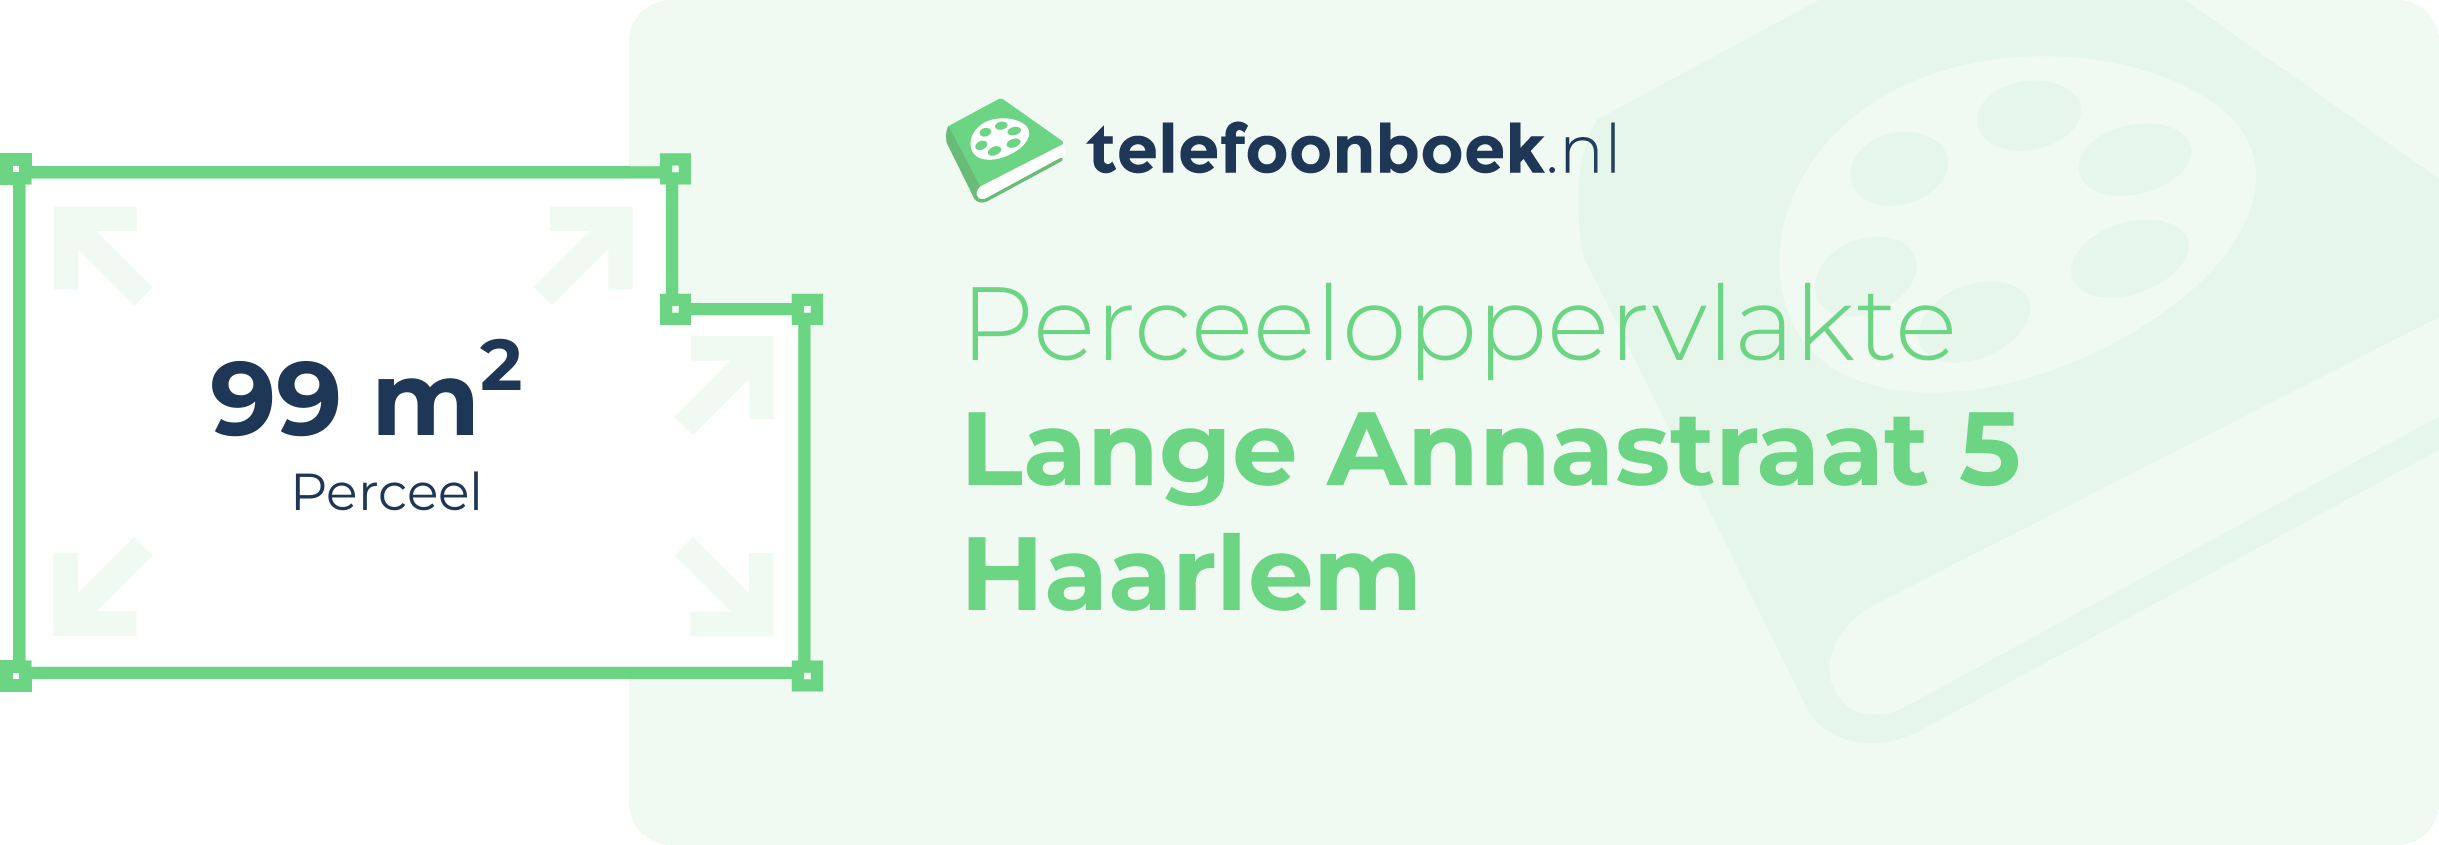 Perceeloppervlakte Lange Annastraat 5 Haarlem